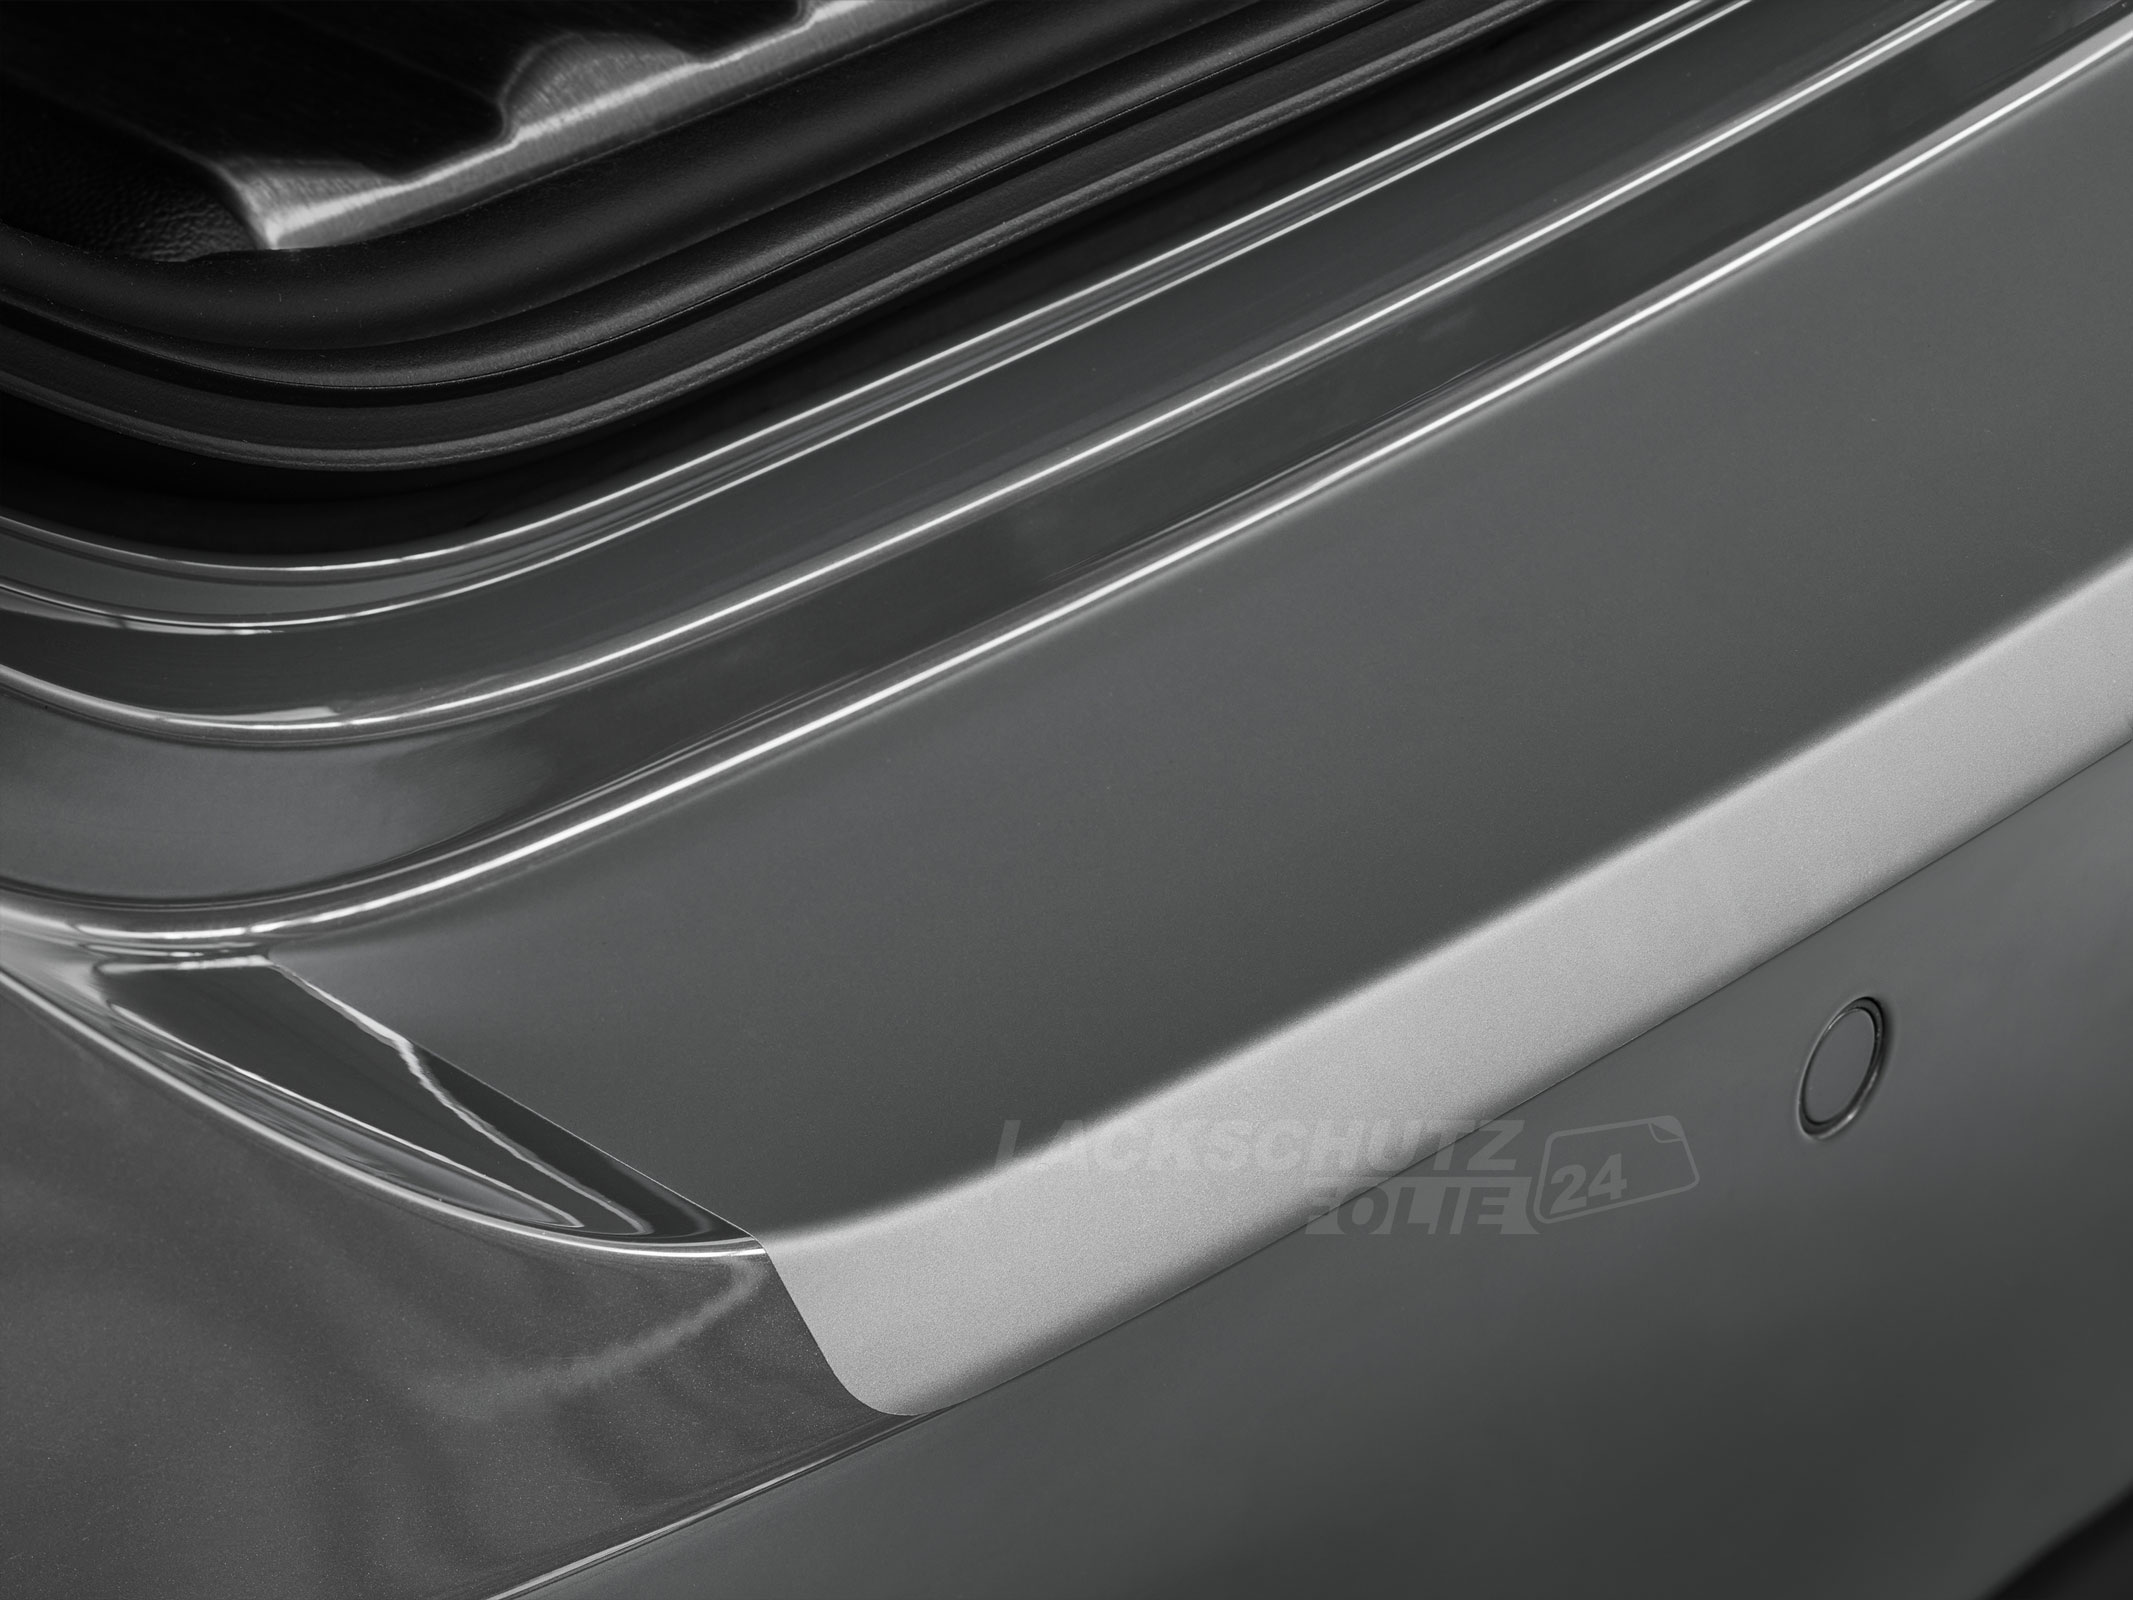 Ladekantenschutzfolie - Transparent Glatt MATT 110 µm stark  für BMW 6er Gran Coupe Typ F06, ab BJ 05/2012